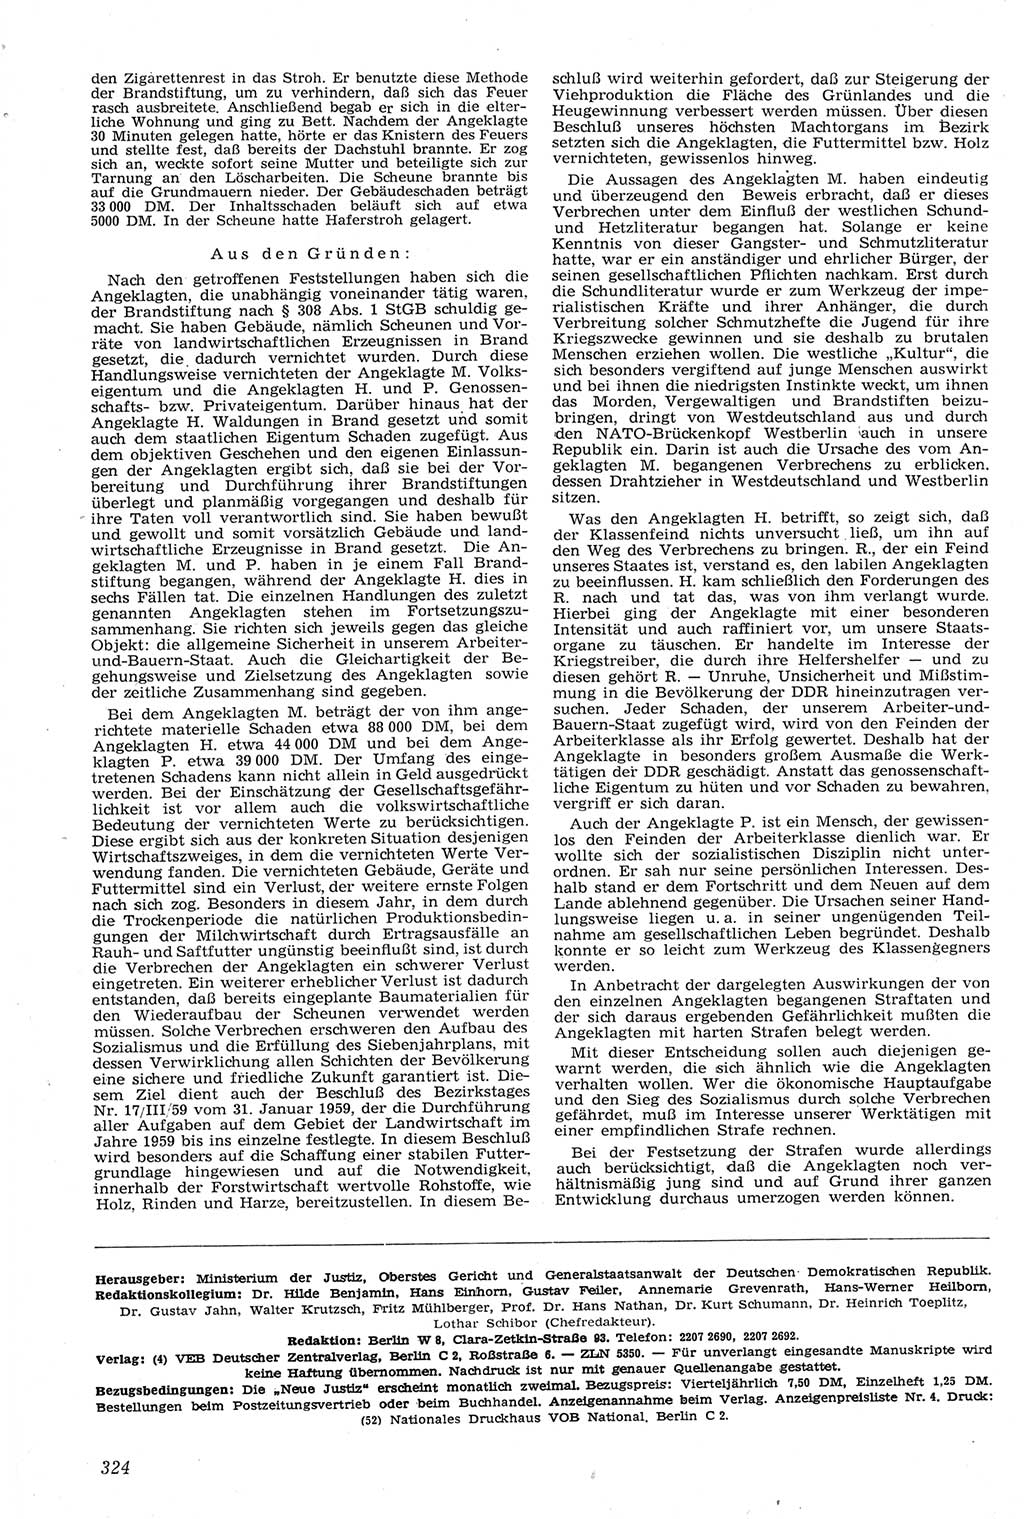 Neue Justiz (NJ), Zeitschrift für Recht und Rechtswissenschaft [Deutsche Demokratische Republik (DDR)], 14. Jahrgang 1960, Seite 324 (NJ DDR 1960, S. 324)